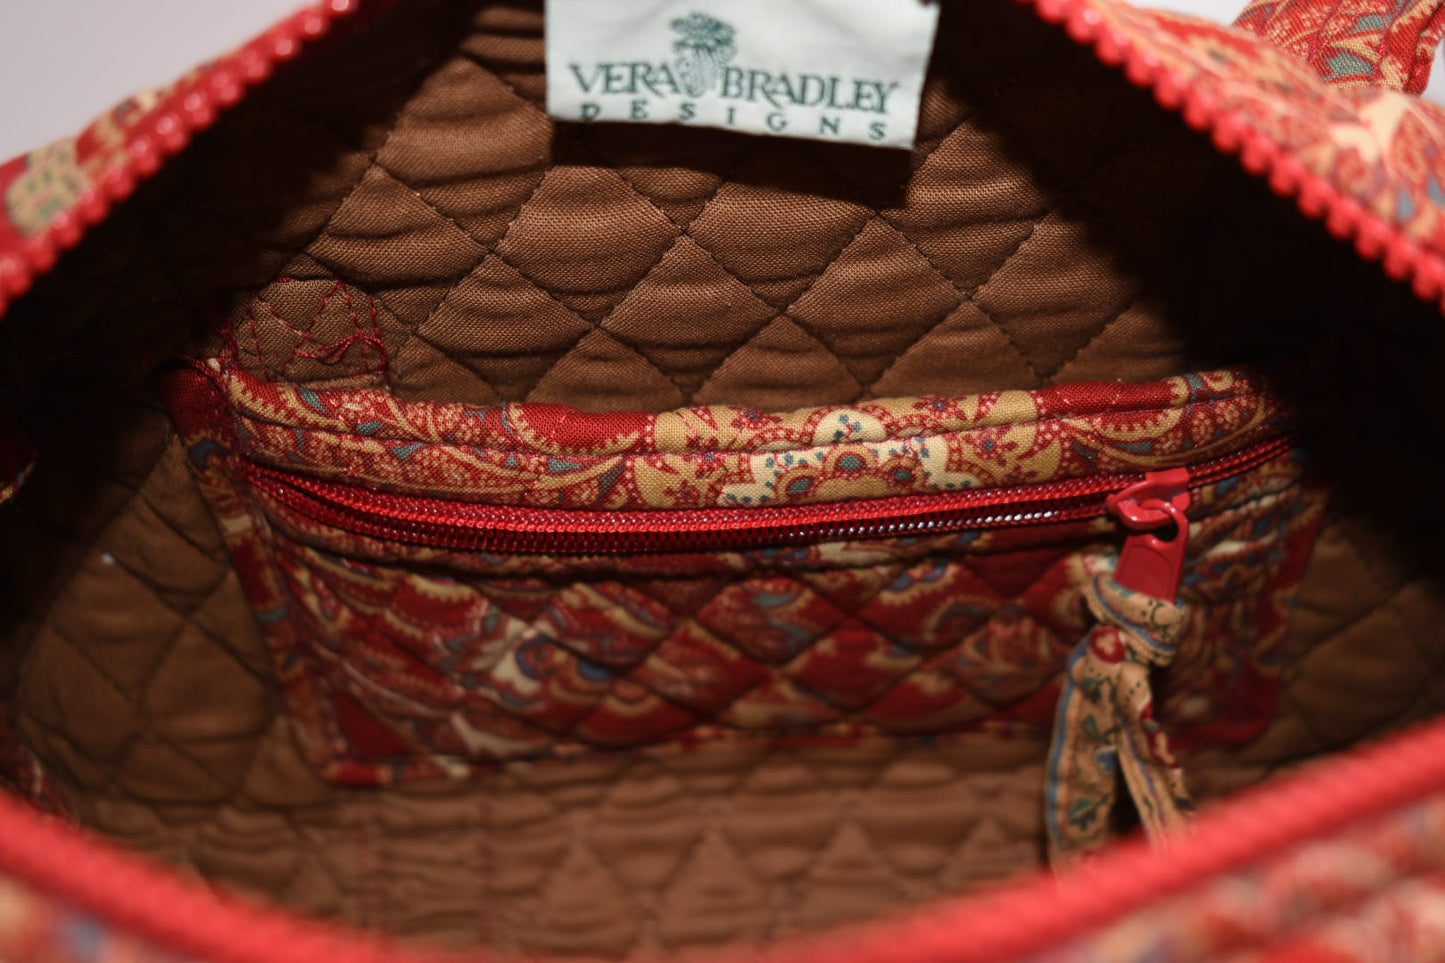 Vintage Vera Bradley Handbag / Shoulder Bag in "Windsor-1995" Pattern